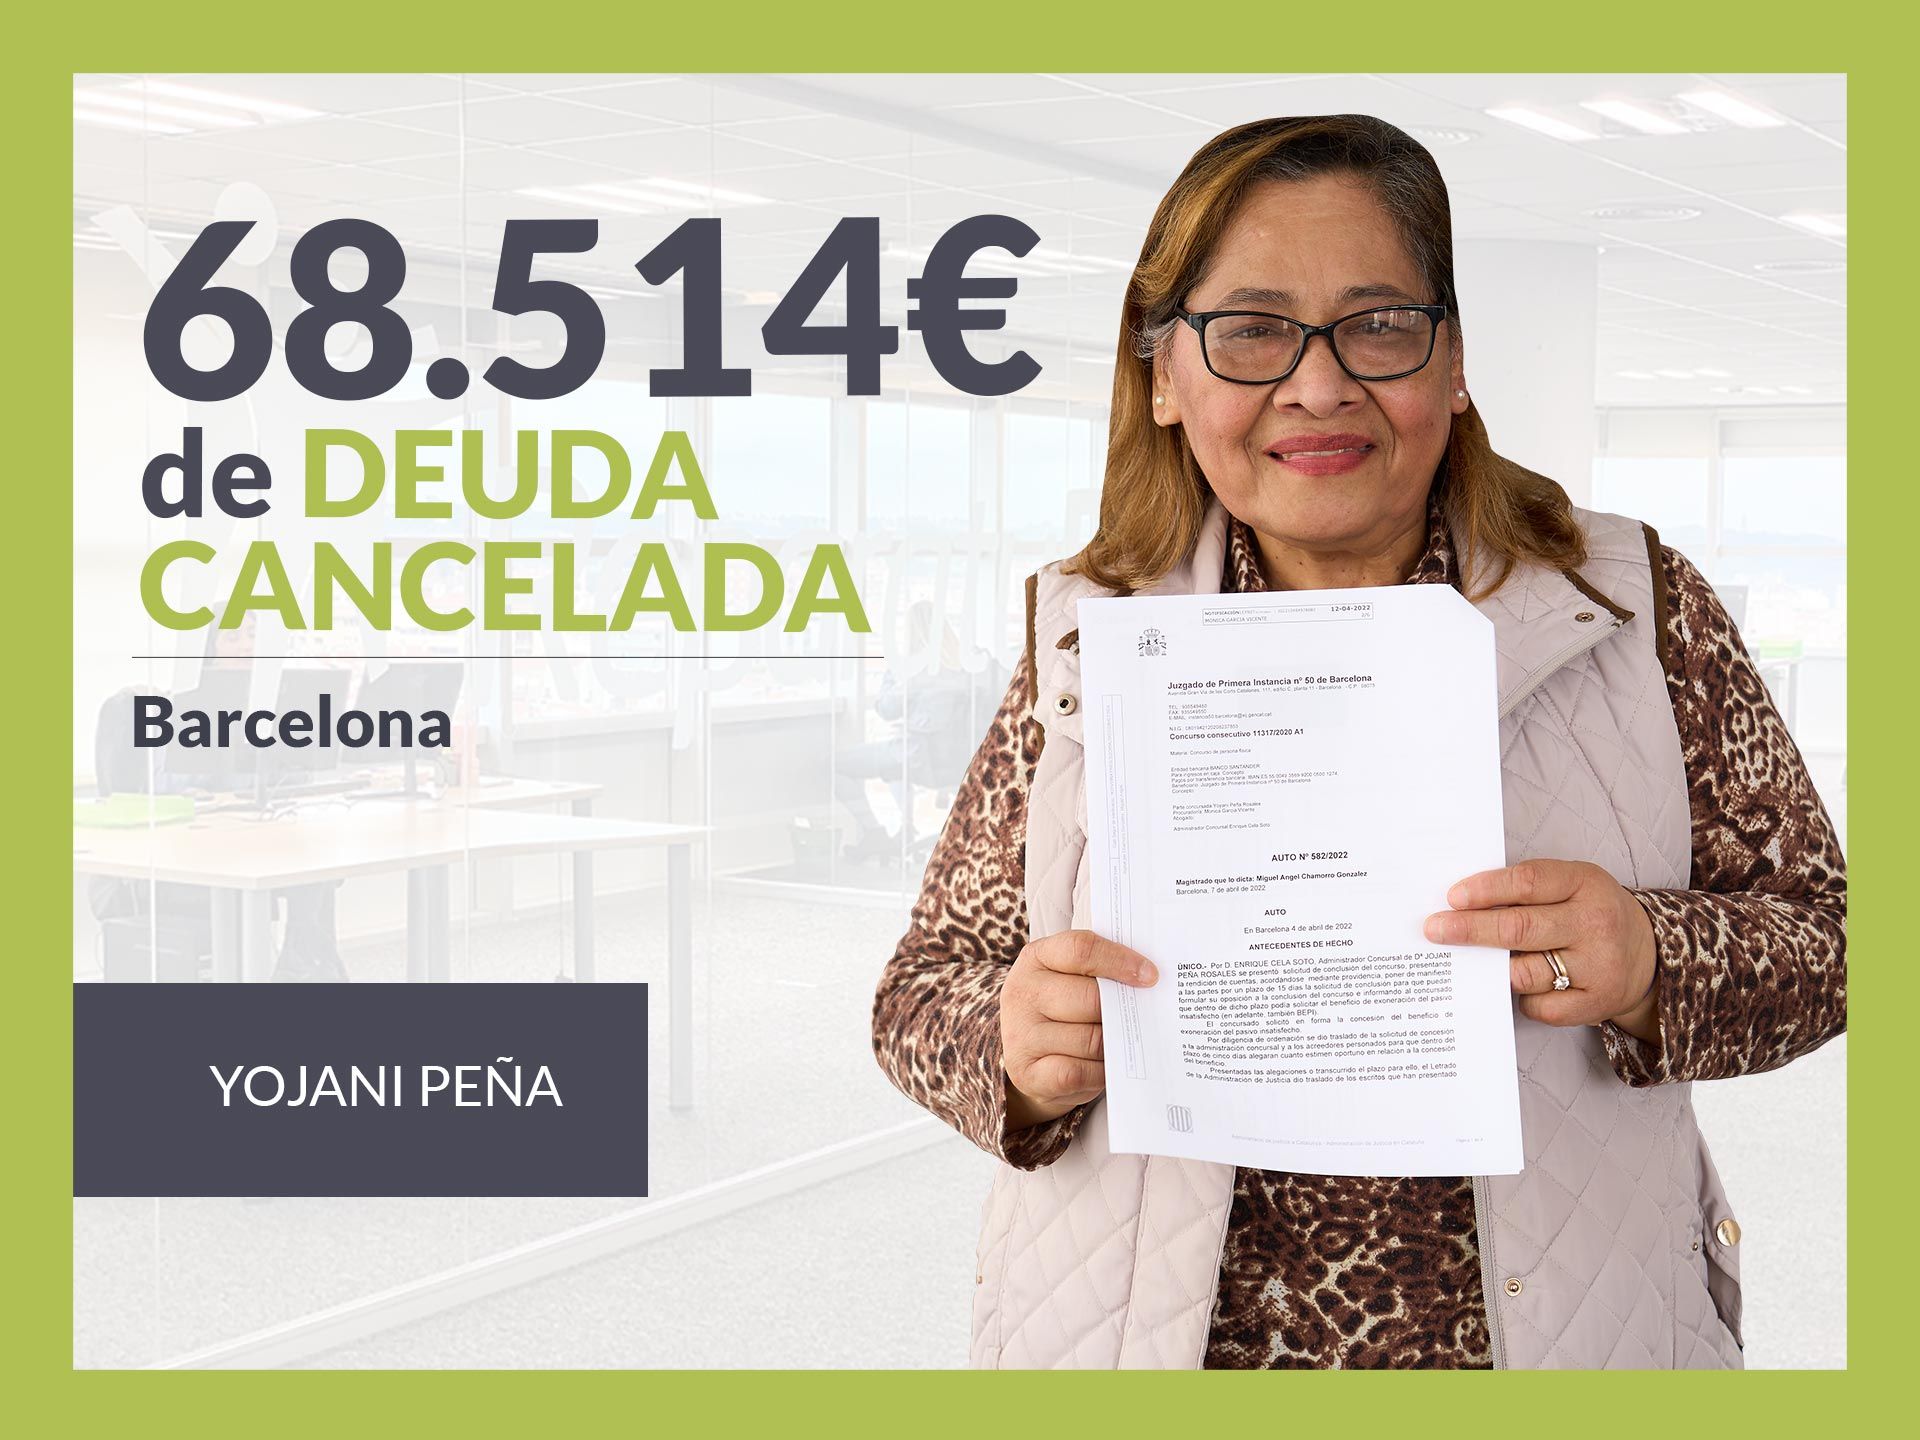 Repara tu Deuda Abogados cancela 68.514? en Barcelona (Catalunya) con la Ley de Segunda Oportunidad